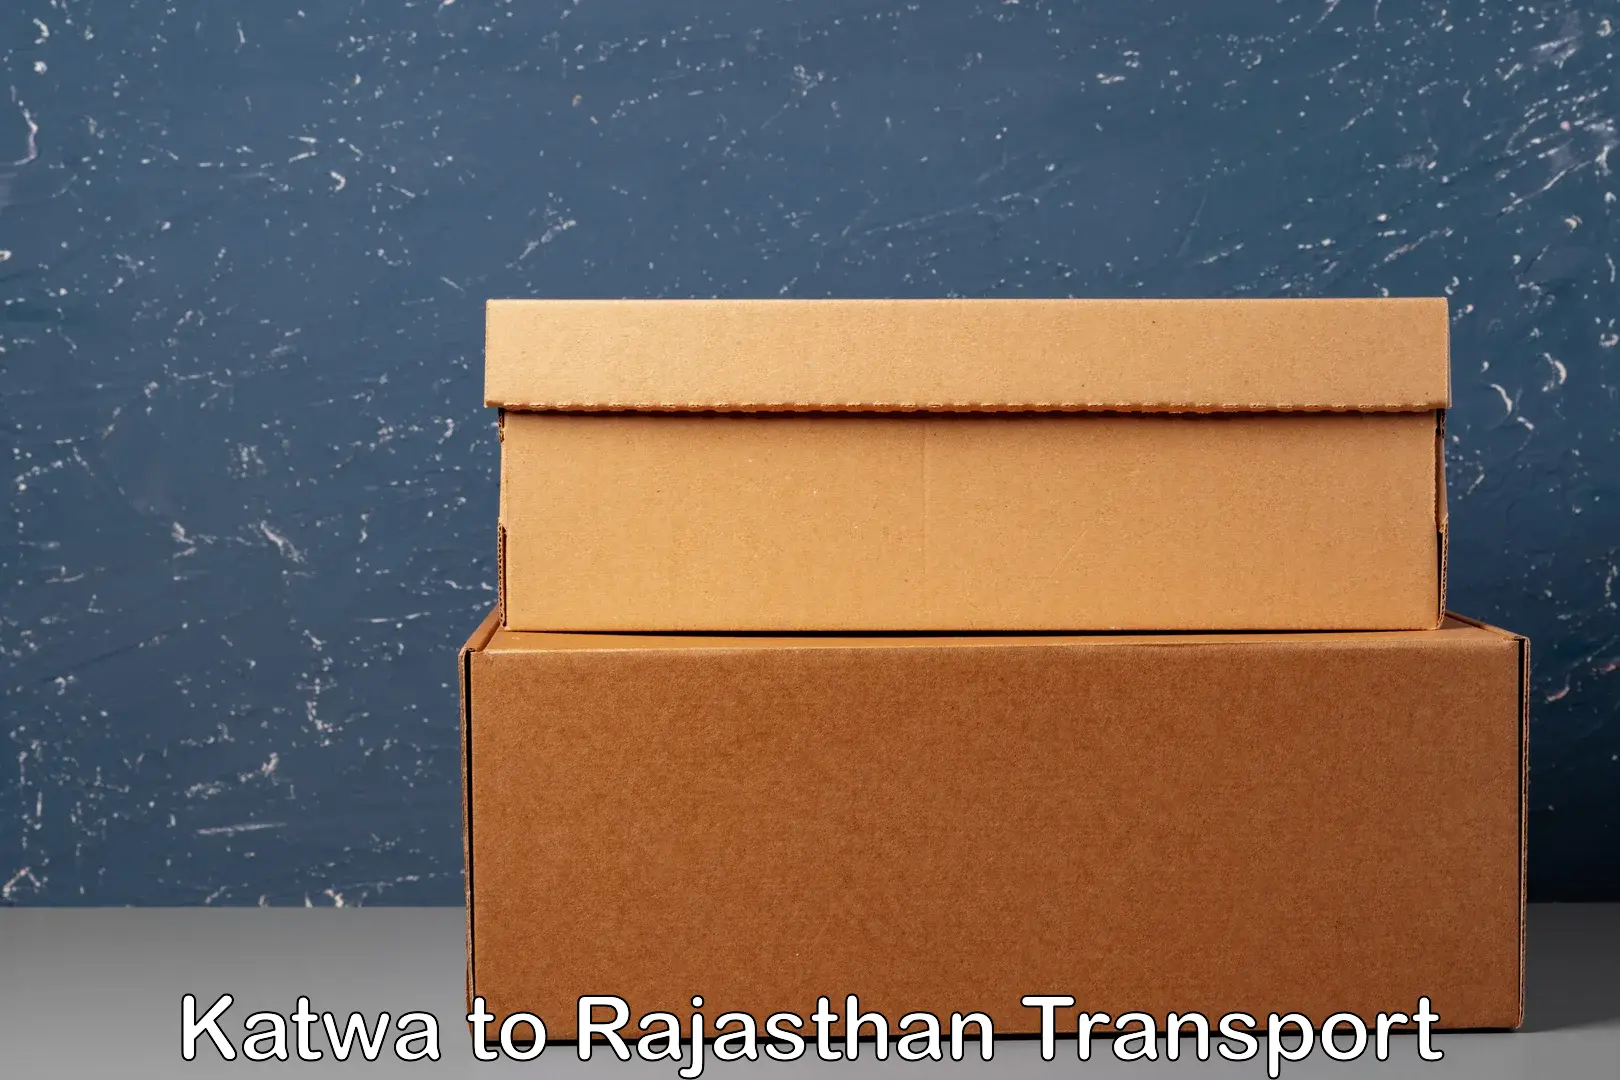 Transport services in Katwa to Pratapgarh Rajasthan